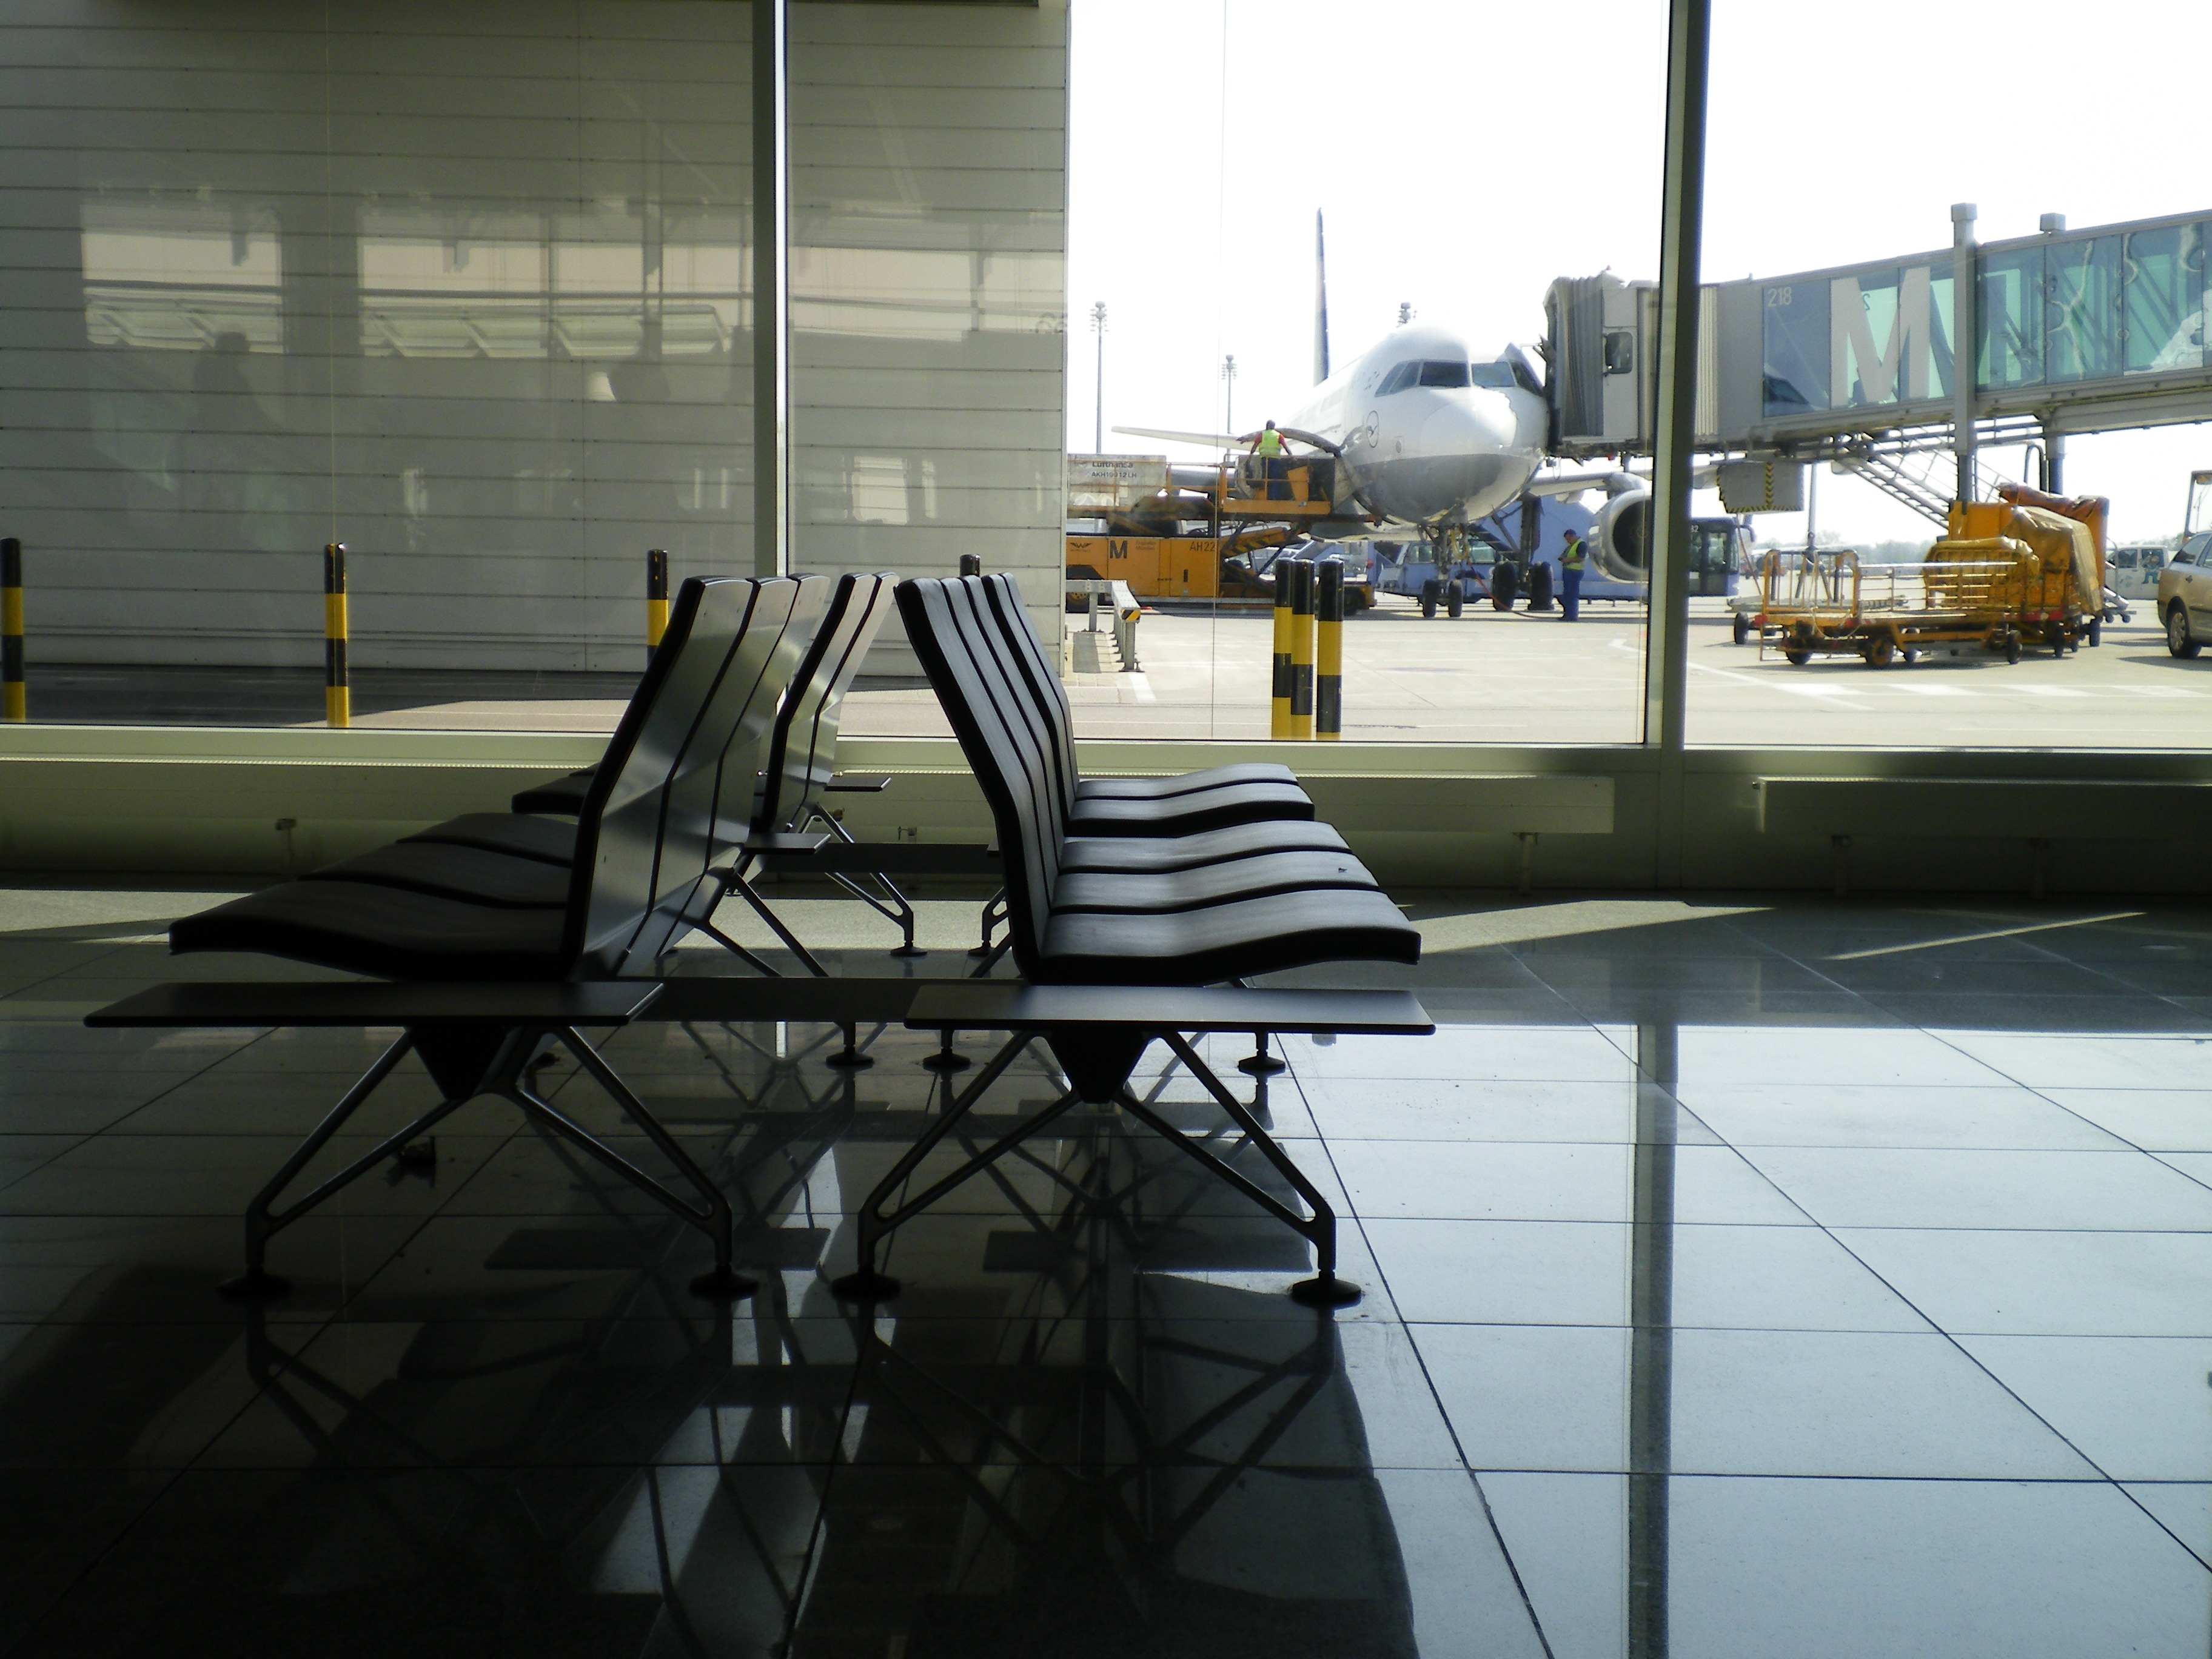 公共座椅|机场椅|办公家具|中国有限公司官家具|Airline机场椅